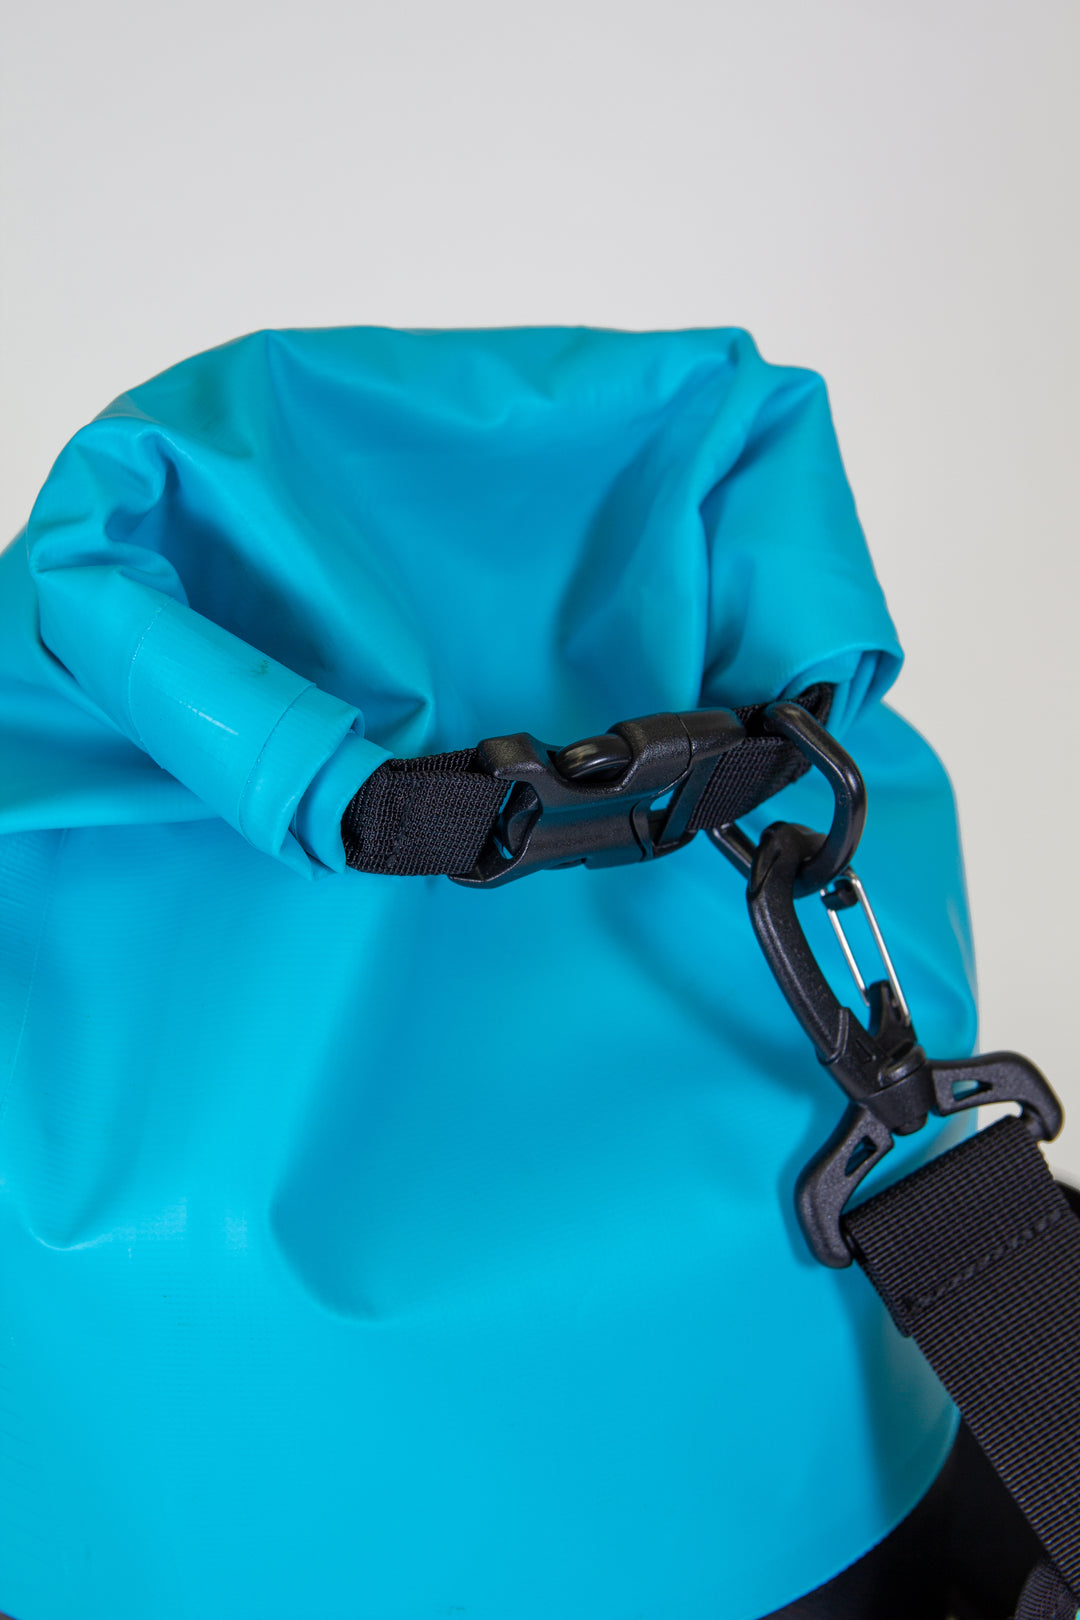 Red Original 10L Dry Bag - Blue - rollbare wasserdichte Tasche